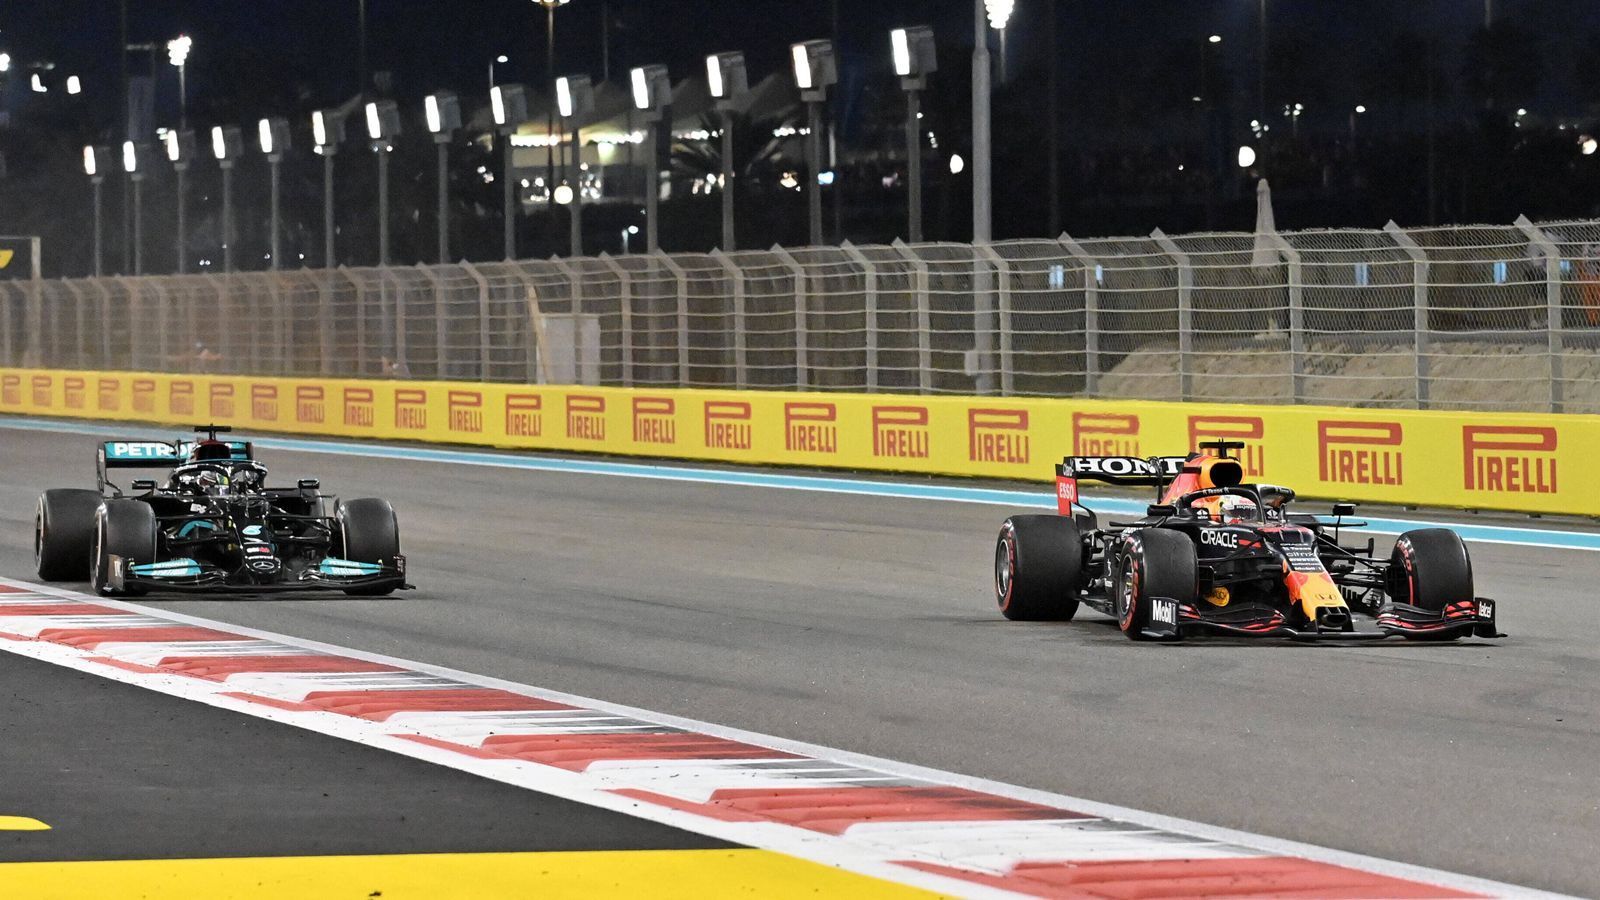 
                <strong>Reglement</strong><br>
                2022 bekommt die Formel 1 ein neues Reglement, und in dem Zuge auch neue Autos, neue Herausforderungen, Überraschungen. Die Königsklasse als Wundertüte - für Fahrer wie Hamilton kann das noch einmal eine neue Motivation mit sich bringen. Denn ...
              